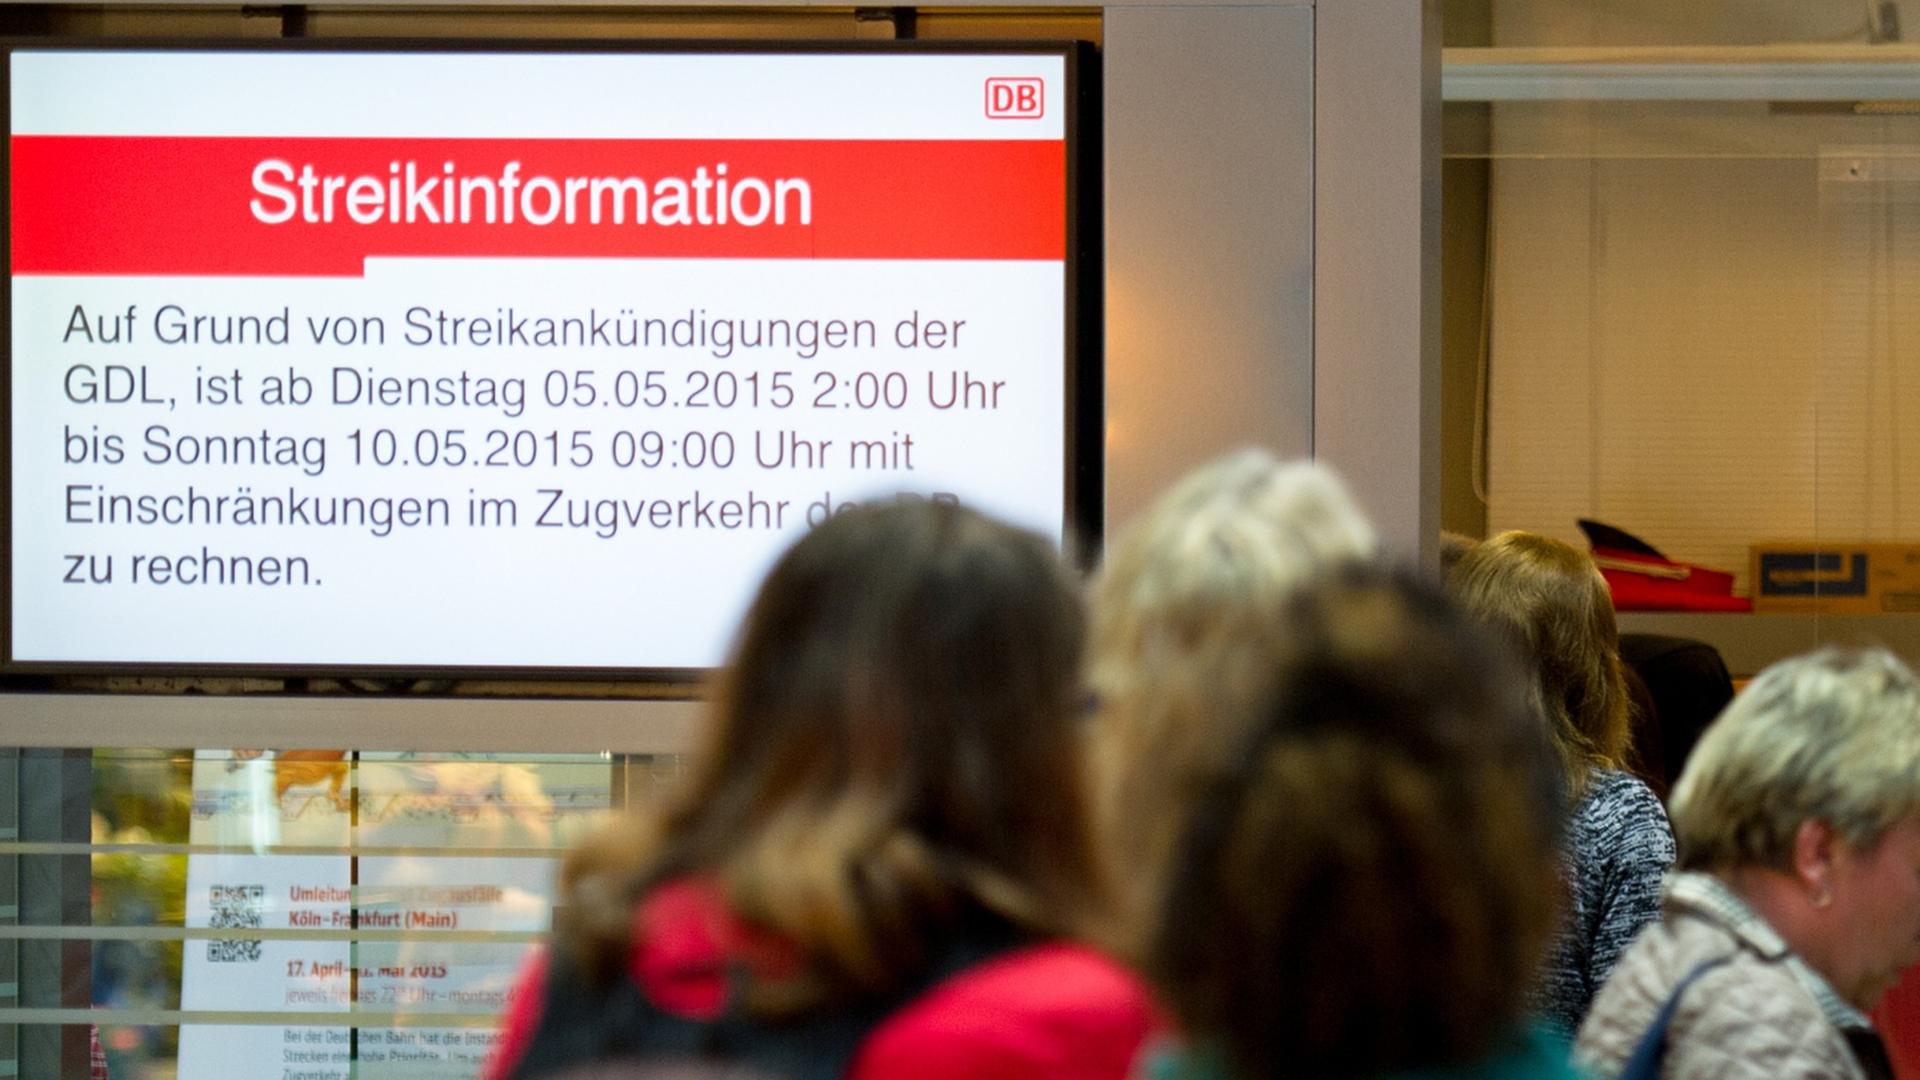 Reisende warten am 05.05.2015 an einem Informationsschalter der Deutschen Bahn auf weitere Auskünfte, während links daneben ein Bildschirm auf den aktuellen Lokführerstreik aufmerksam macht.